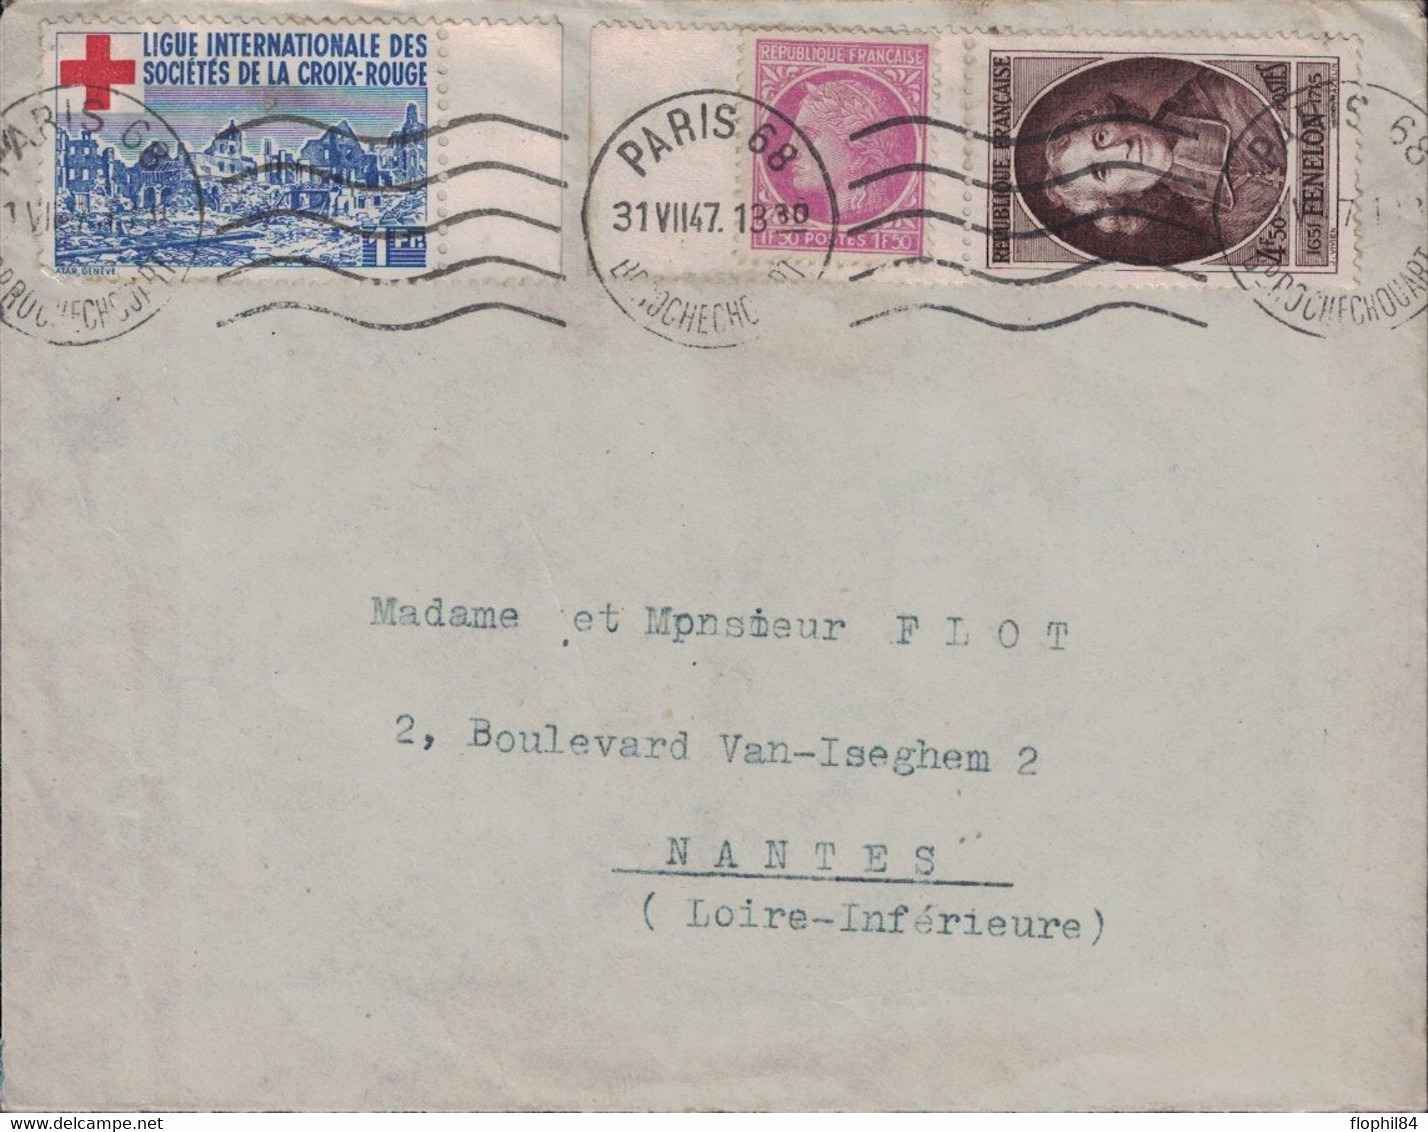 PARIS 68 - BD ROCHECHOUARD - TIMBRE DE DE LA LIGUE DES STES DE LA CROIX ROUGE - BEL AFFRANCHISSEMENT - 31-7-1947. - Cruz Roja